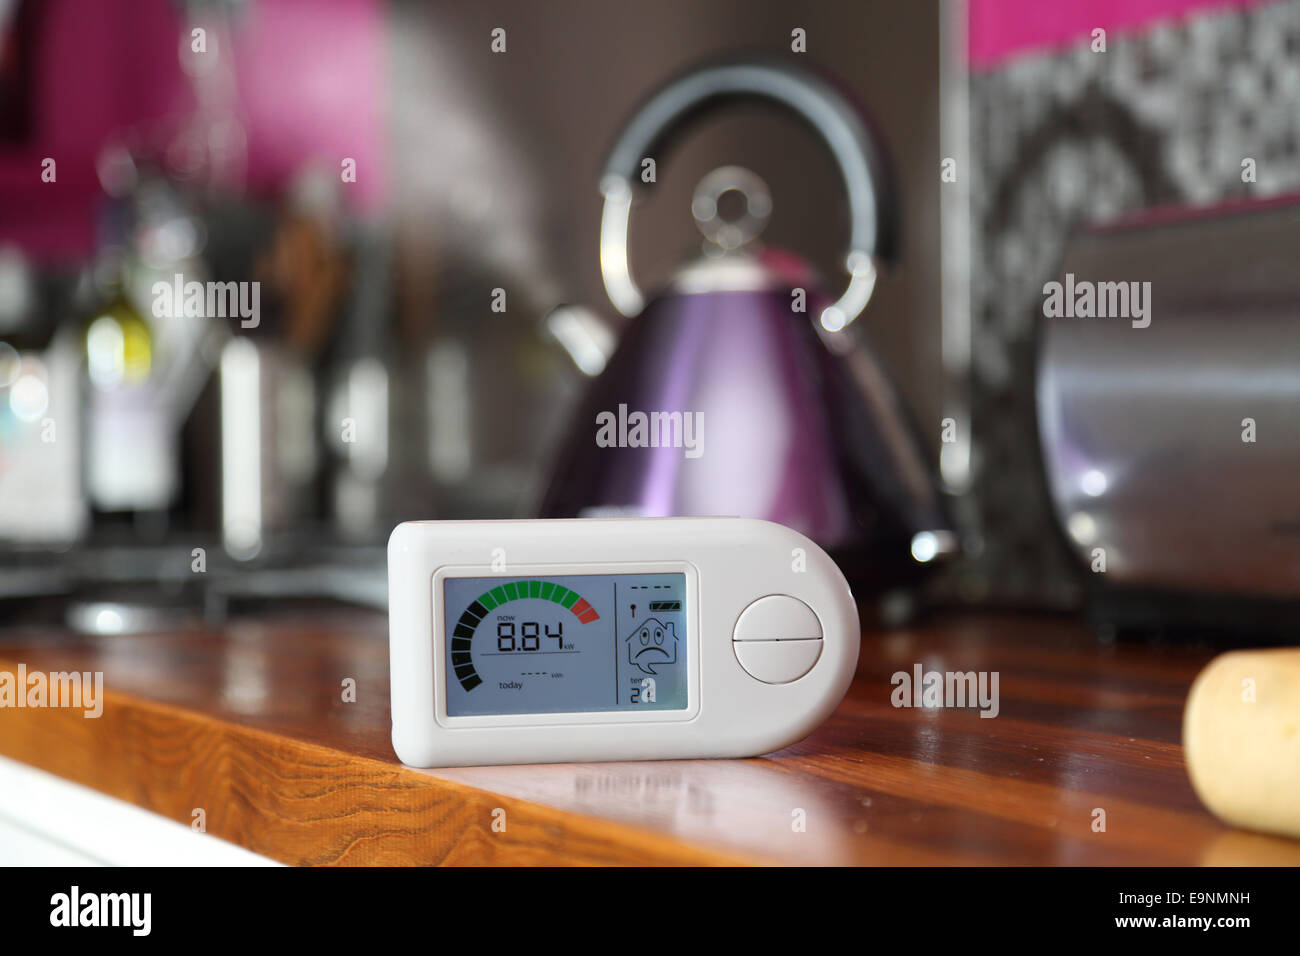 Un monitor de electricidad doméstica en una cocina que muestra un alto nivel de consumo de energía - 8,84Kw Foto de stock